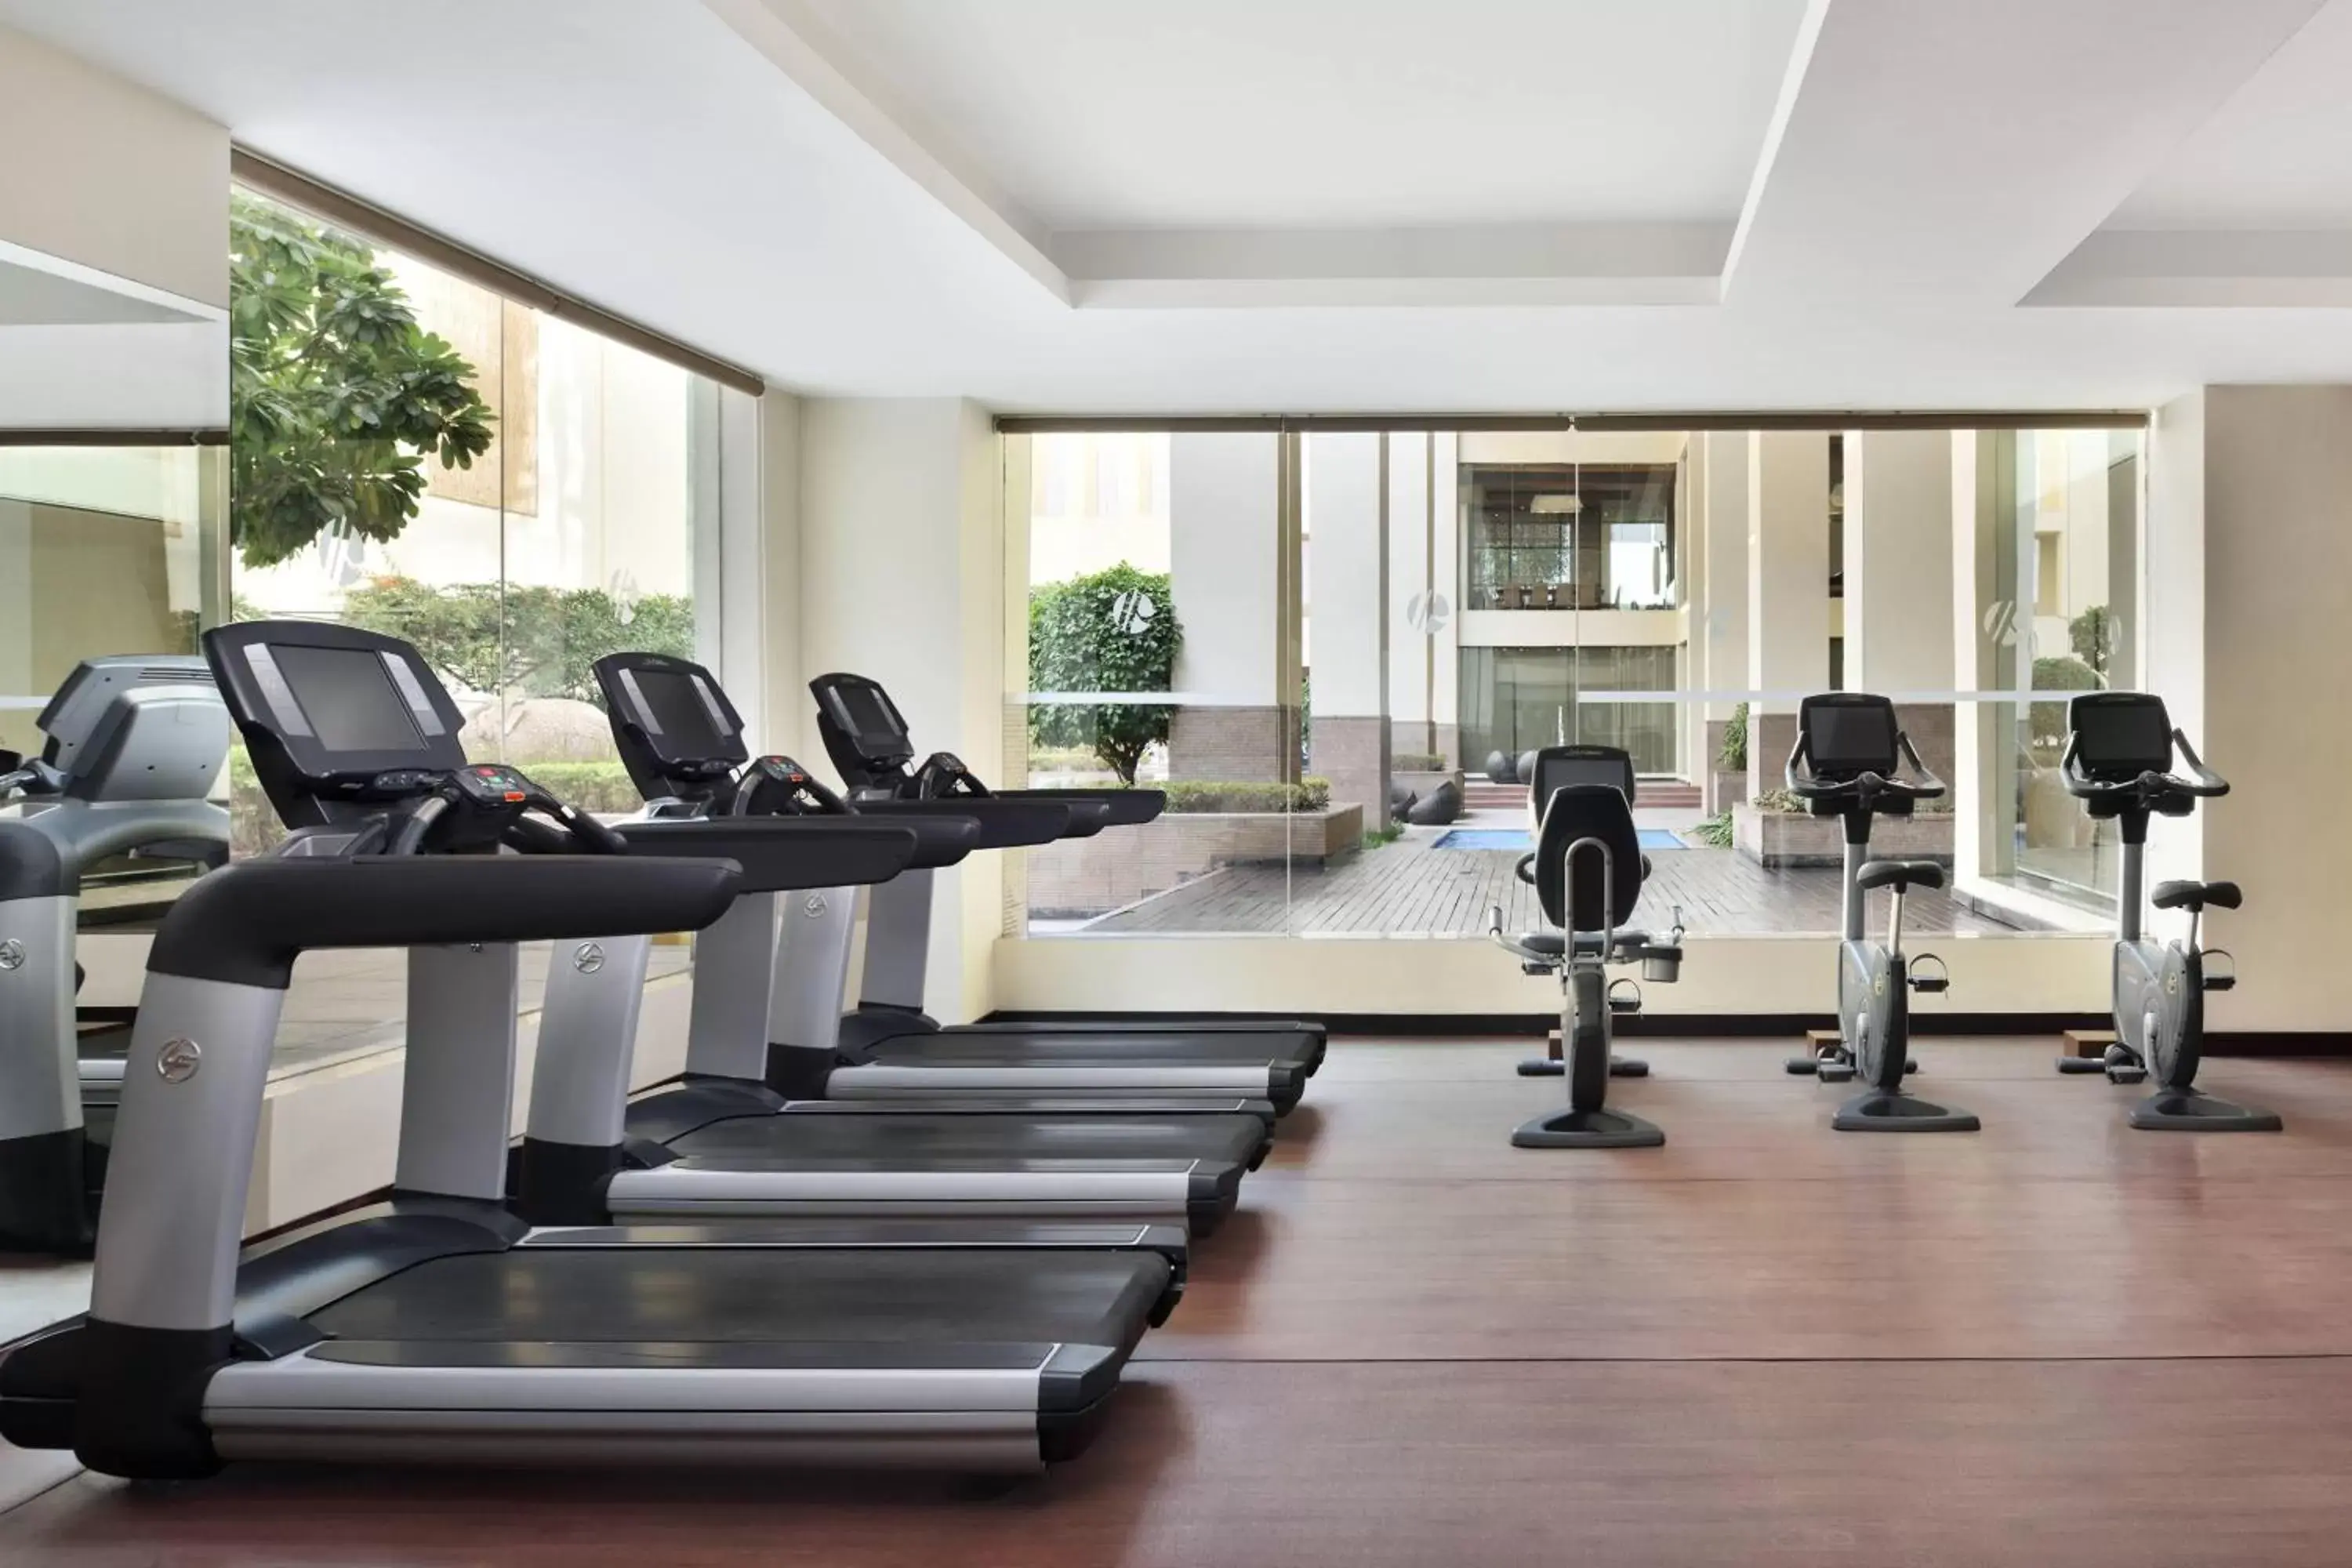 Fitness centre/facilities, Fitness Center/Facilities in Jaipur Marriott Hotel